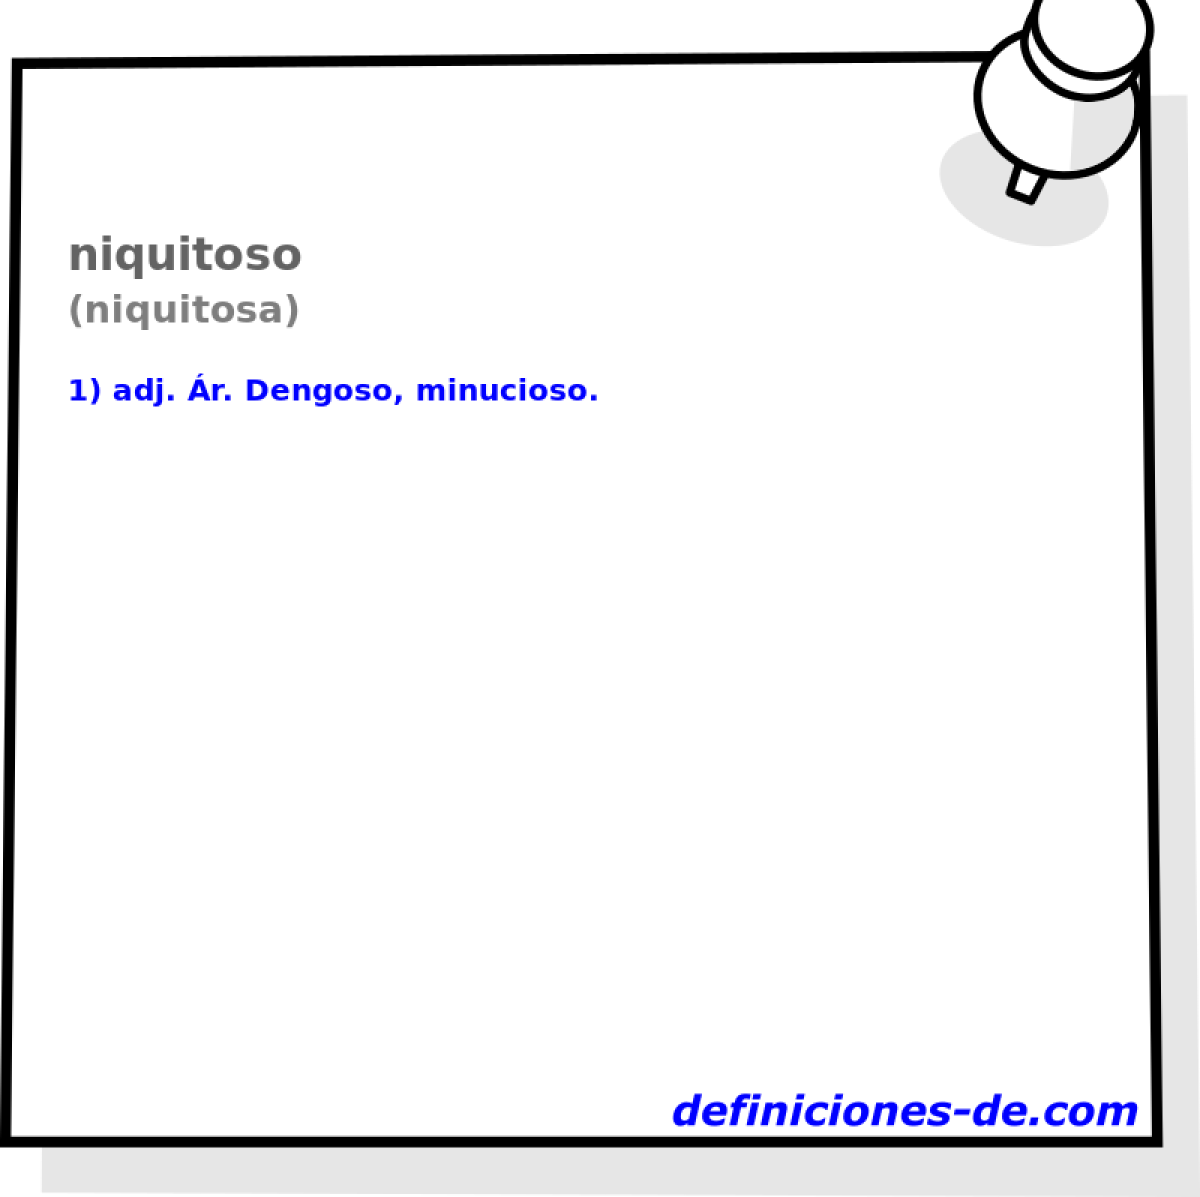 niquitoso (niquitosa)